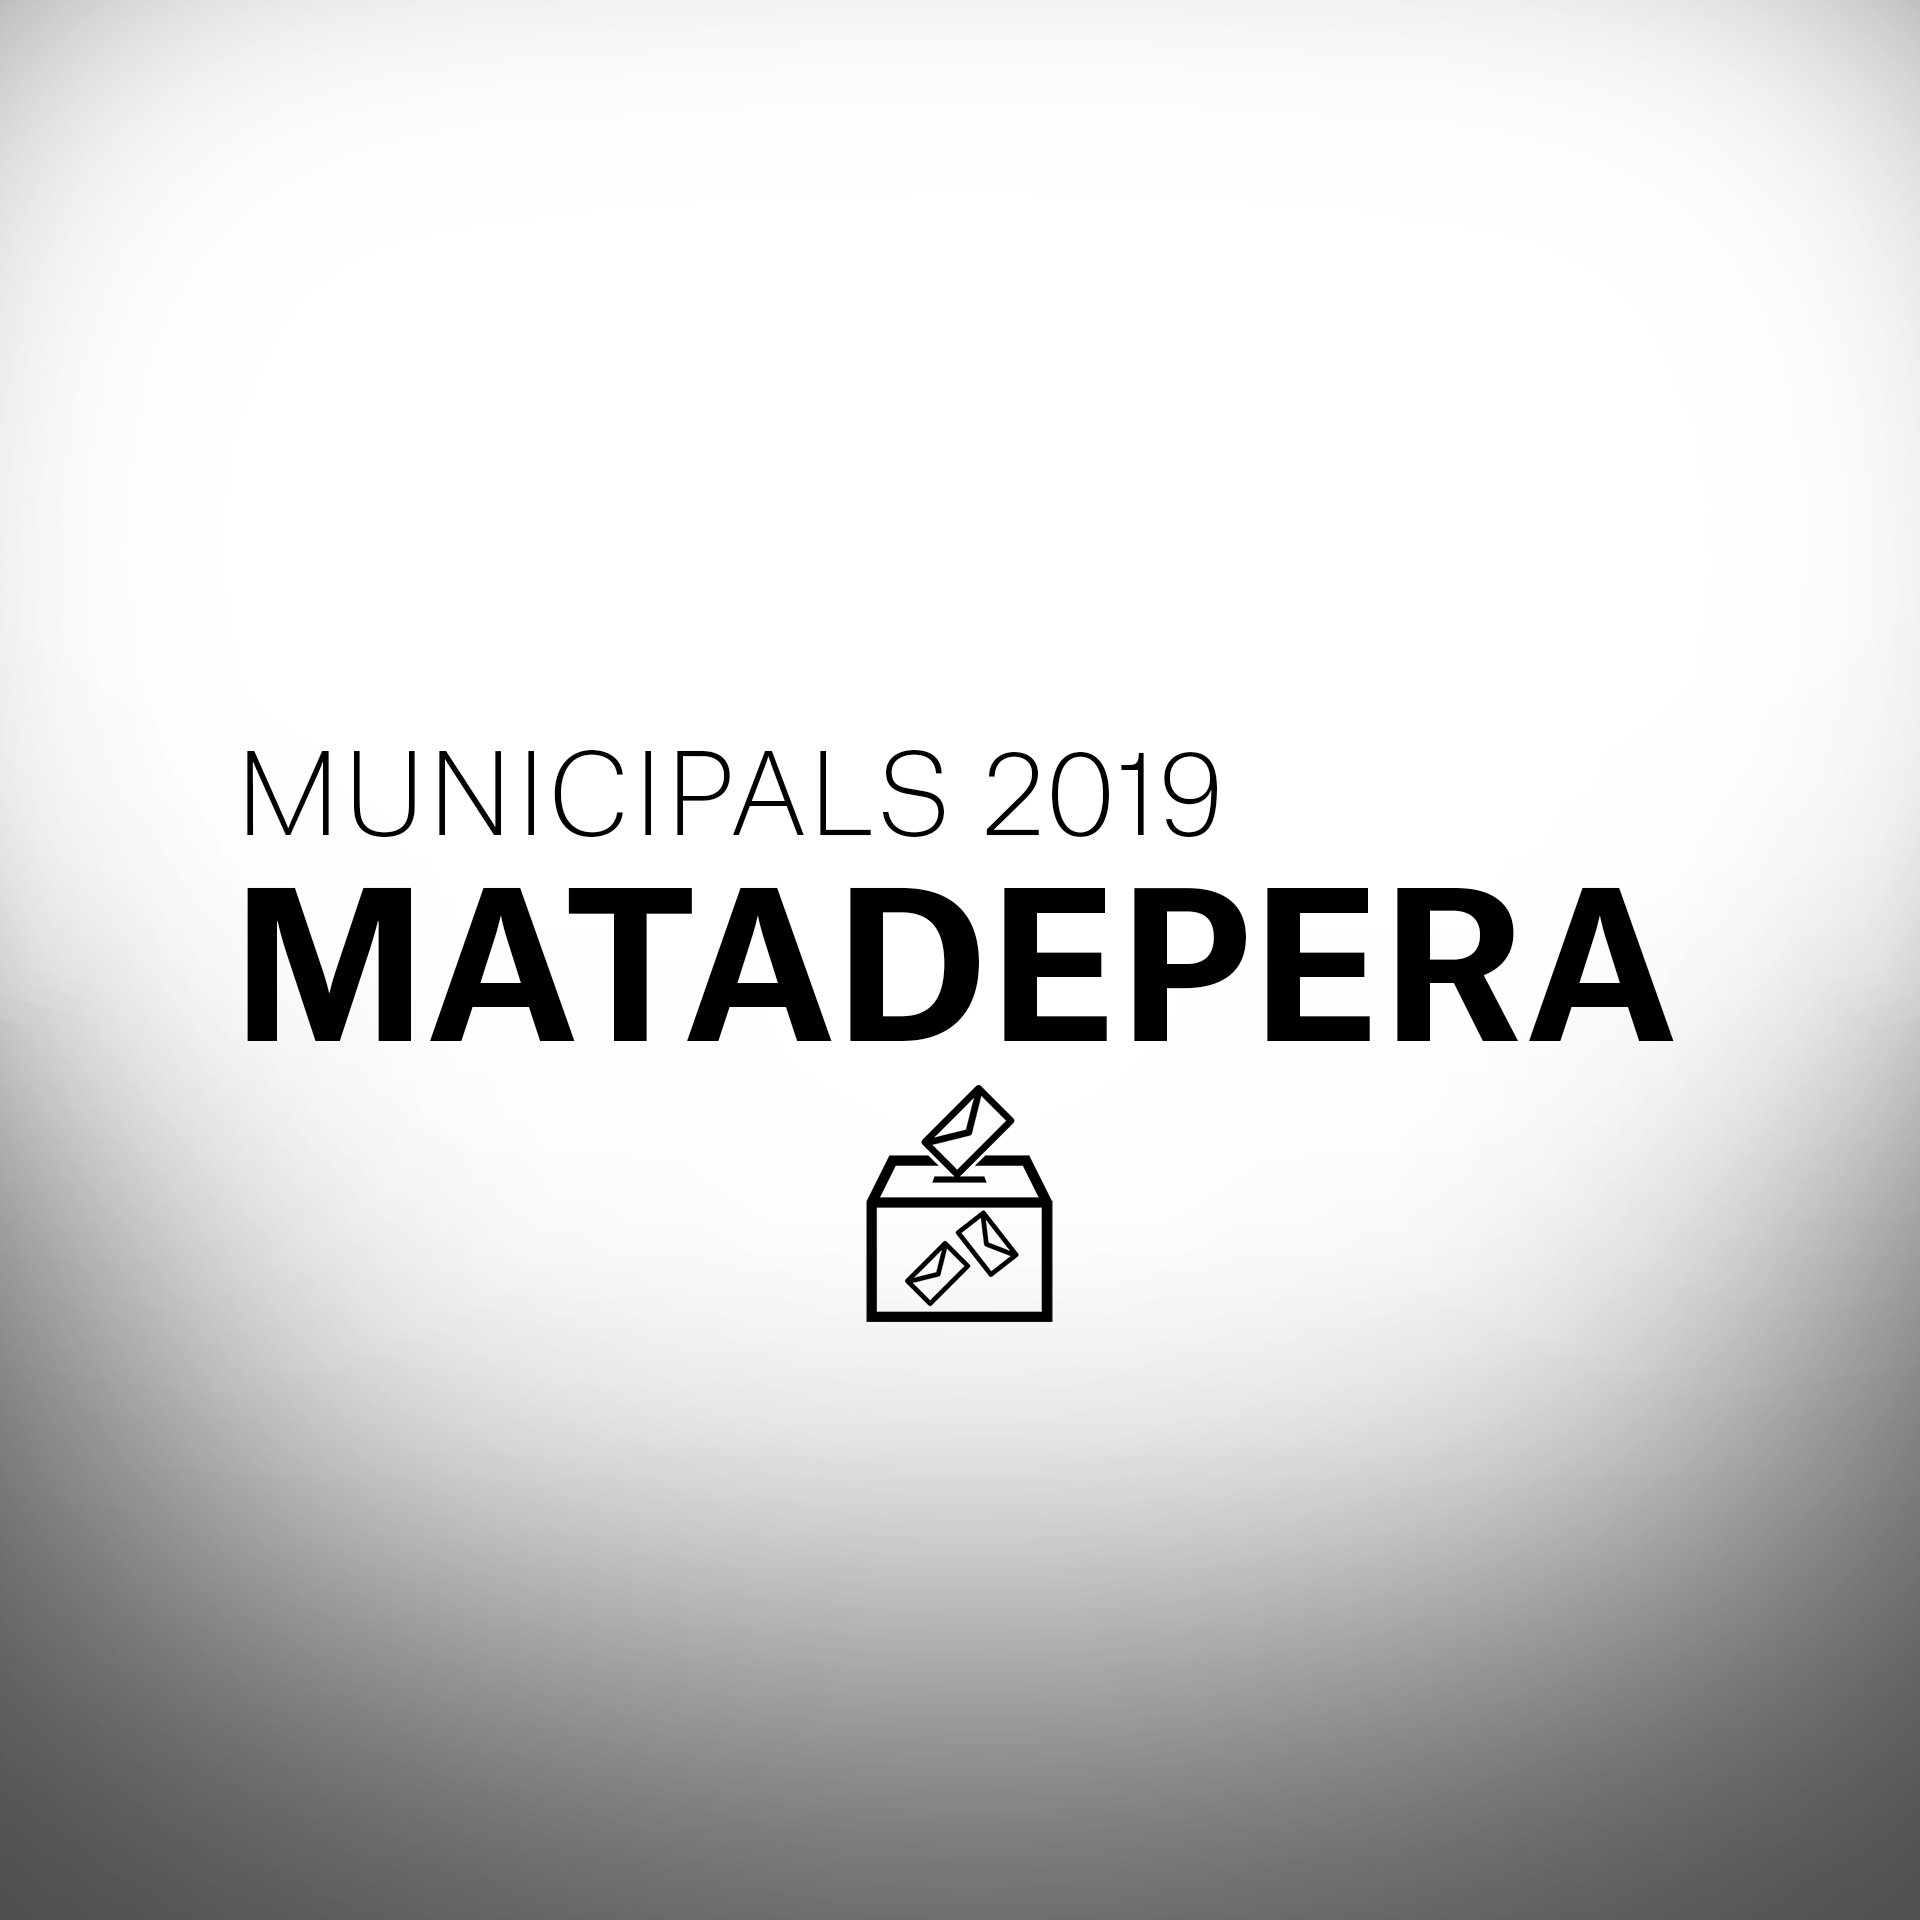 ¿Qué pasará en las elecciones municipales en Matadepera?